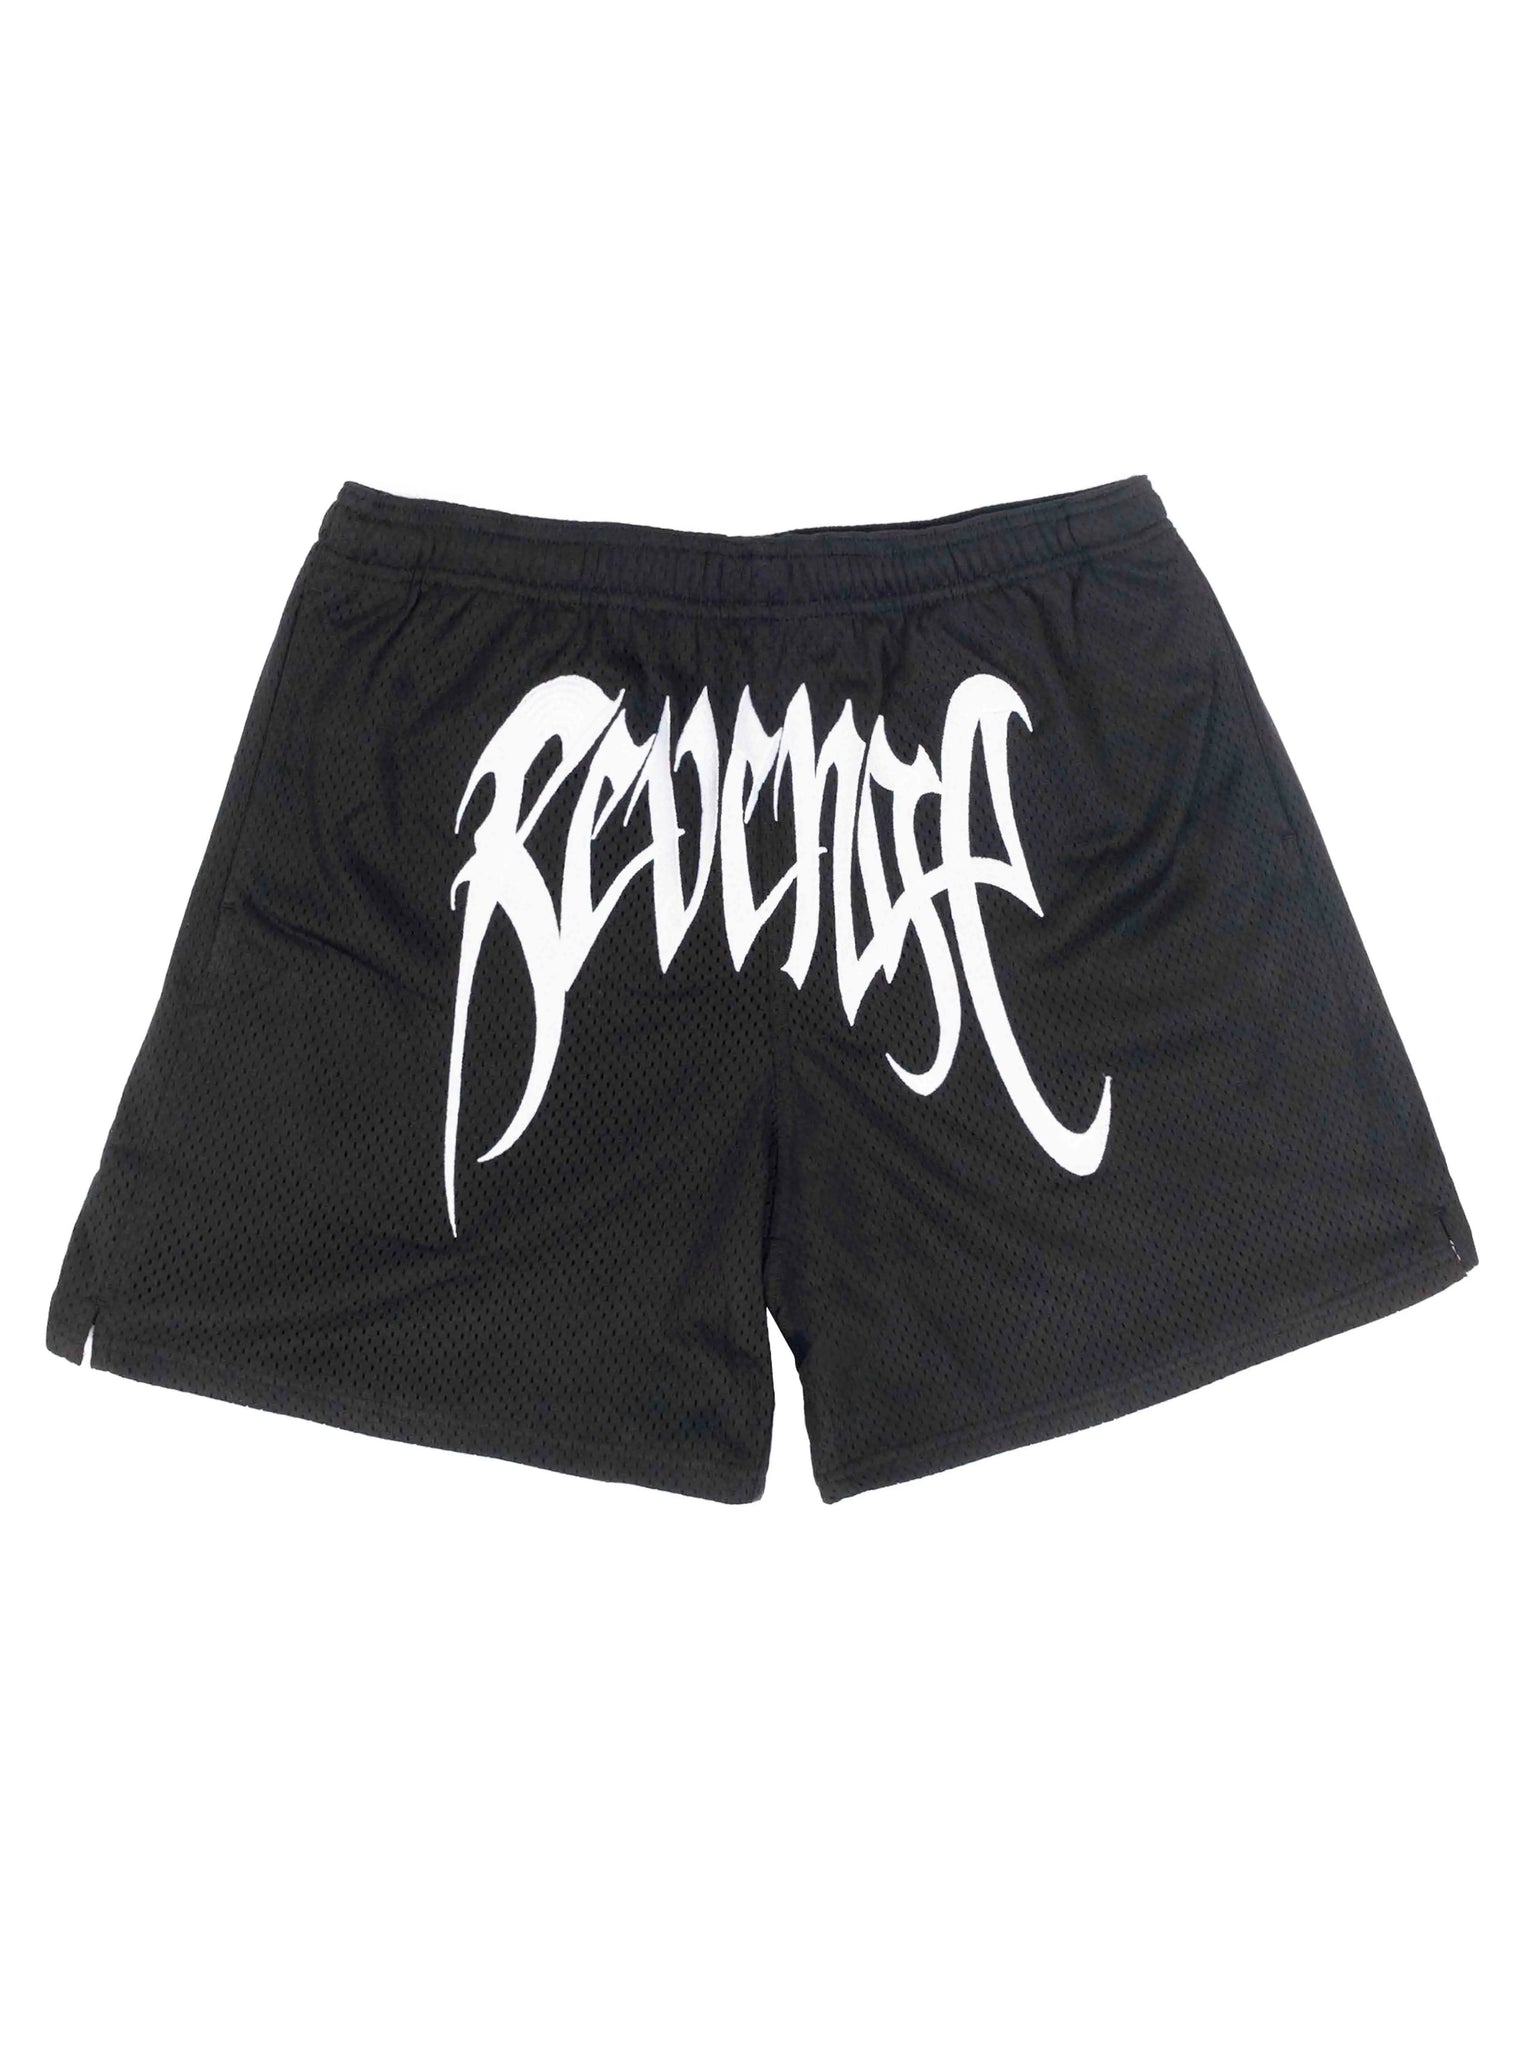 Revenge Mesh Embroidered Shorts Black [FW21] Prior